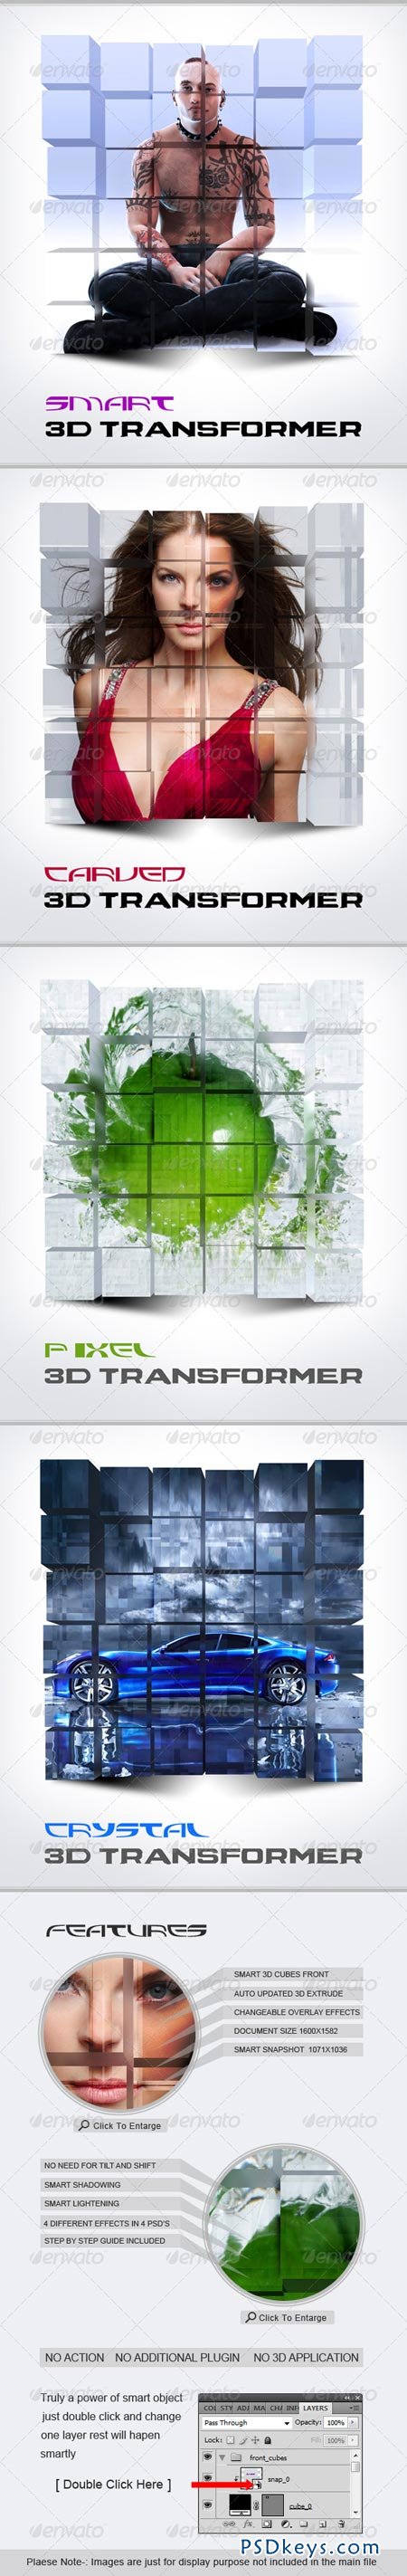 Smart 3D Transformer 241213